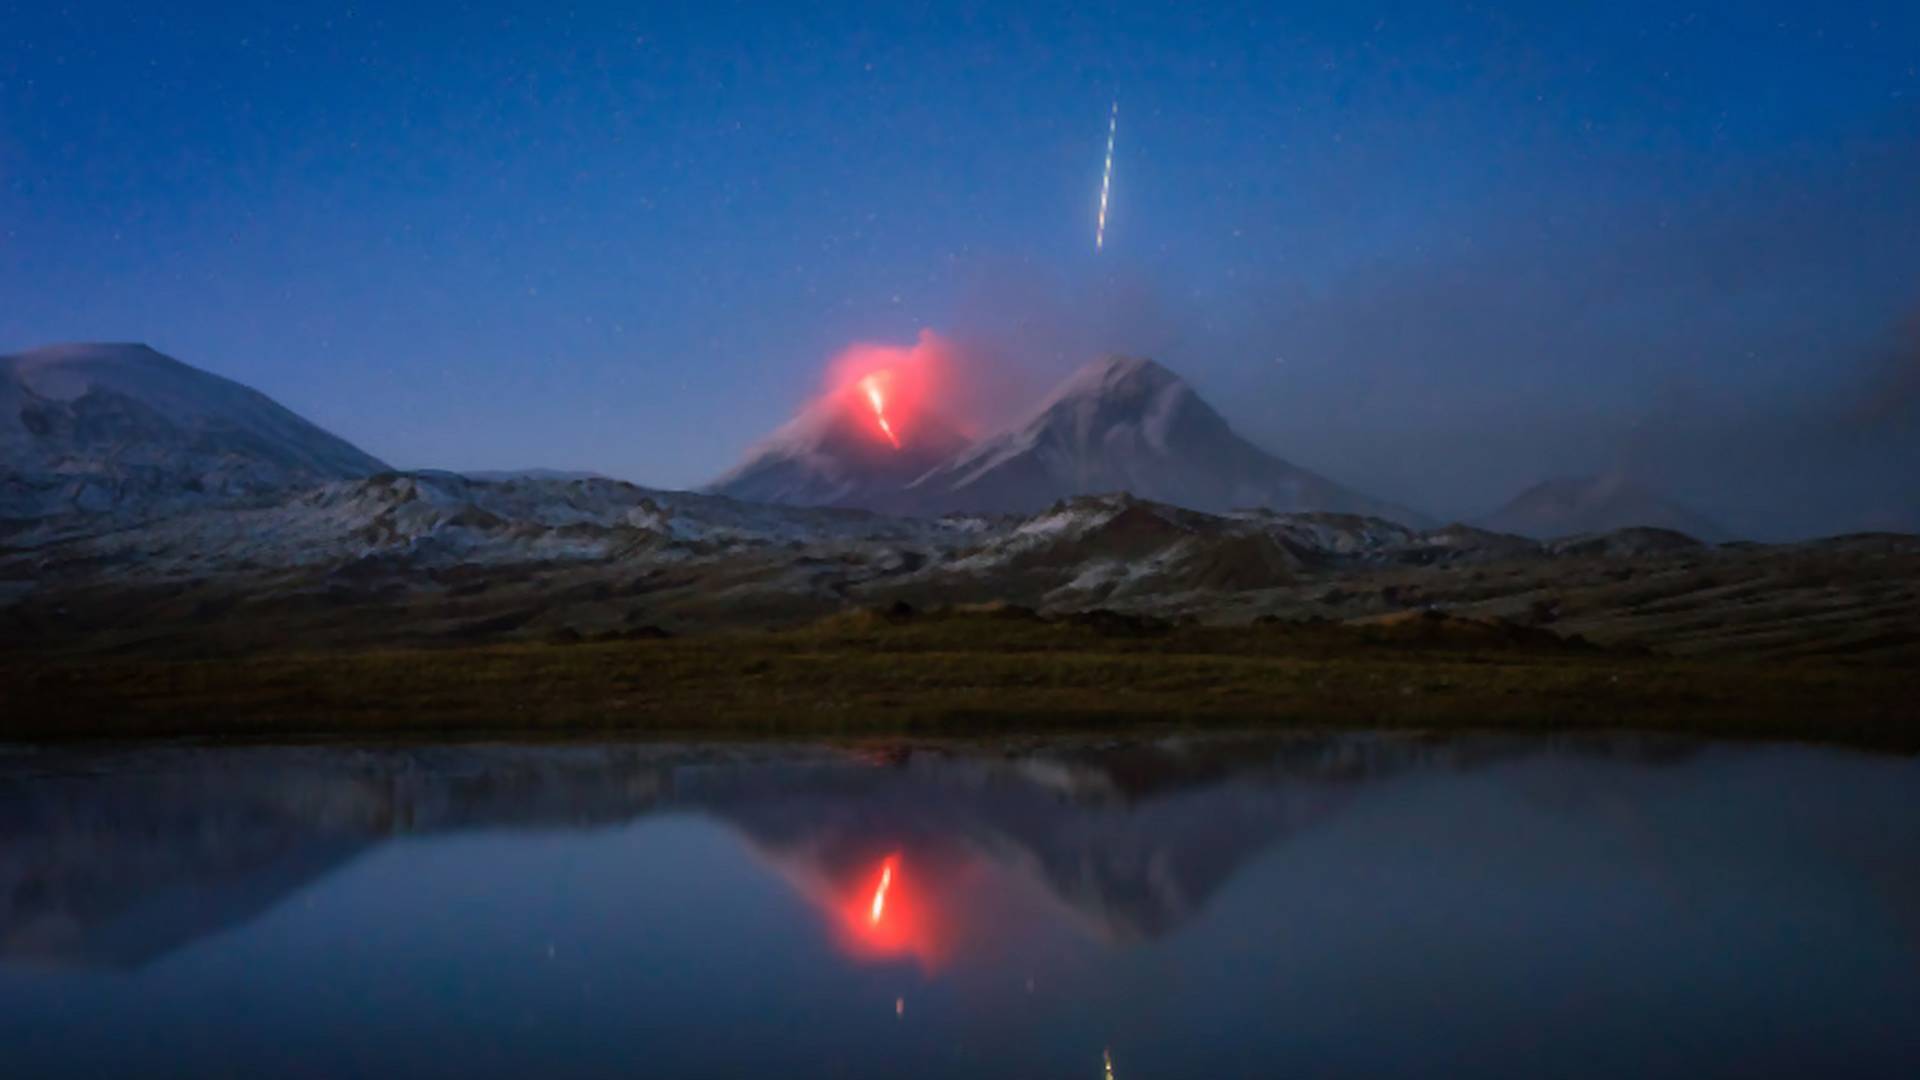 Niezwykłe zdjęcie pokazujące siłę natury. Wybuchający wulkan i meteor na jednej fotografii